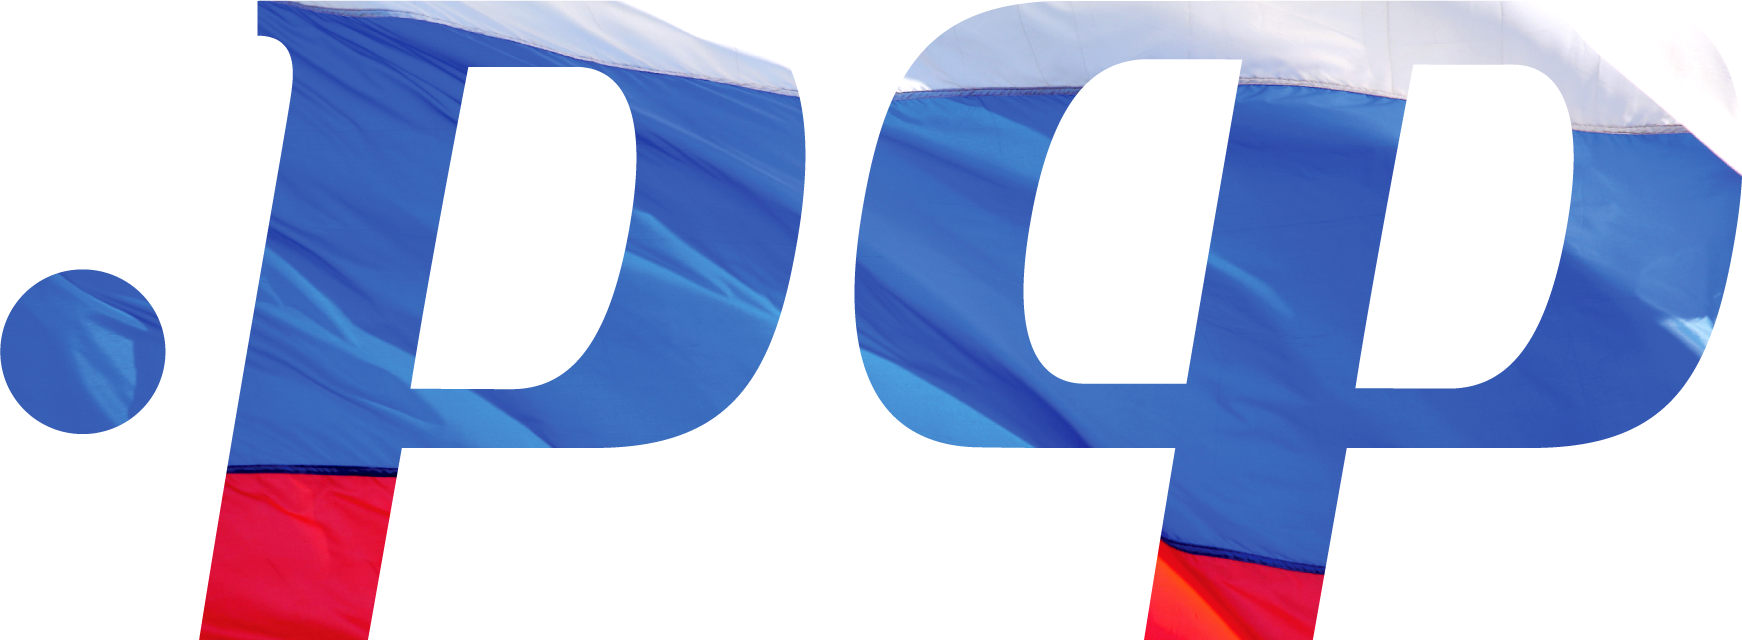 reg.ru Logo photo - 1